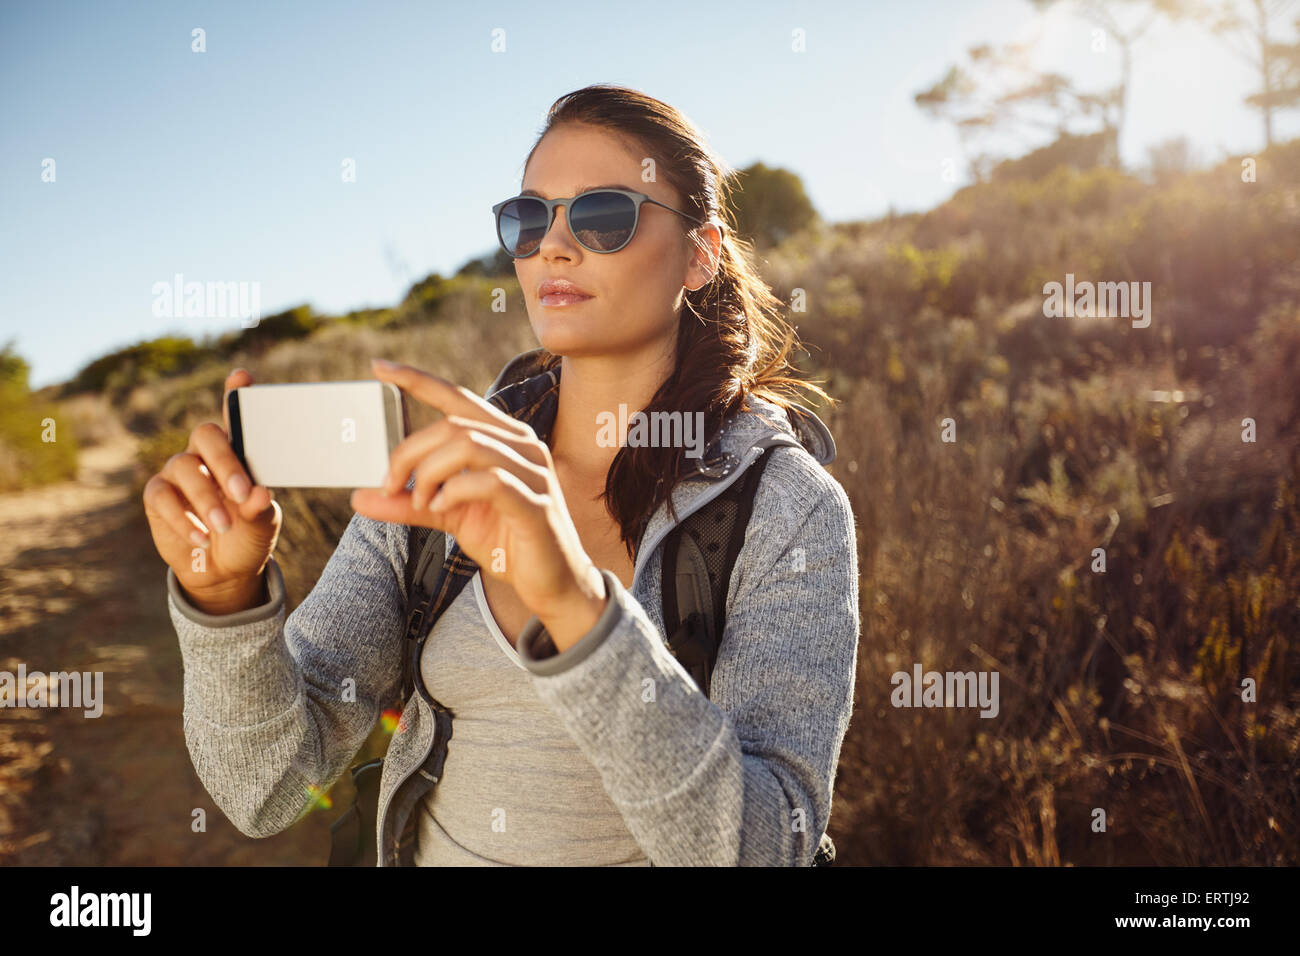 Caminante joven tomando fotografías con su teléfono móvil. Mujer caucásica fotografiar el paisaje con el smartphone. Foto de stock